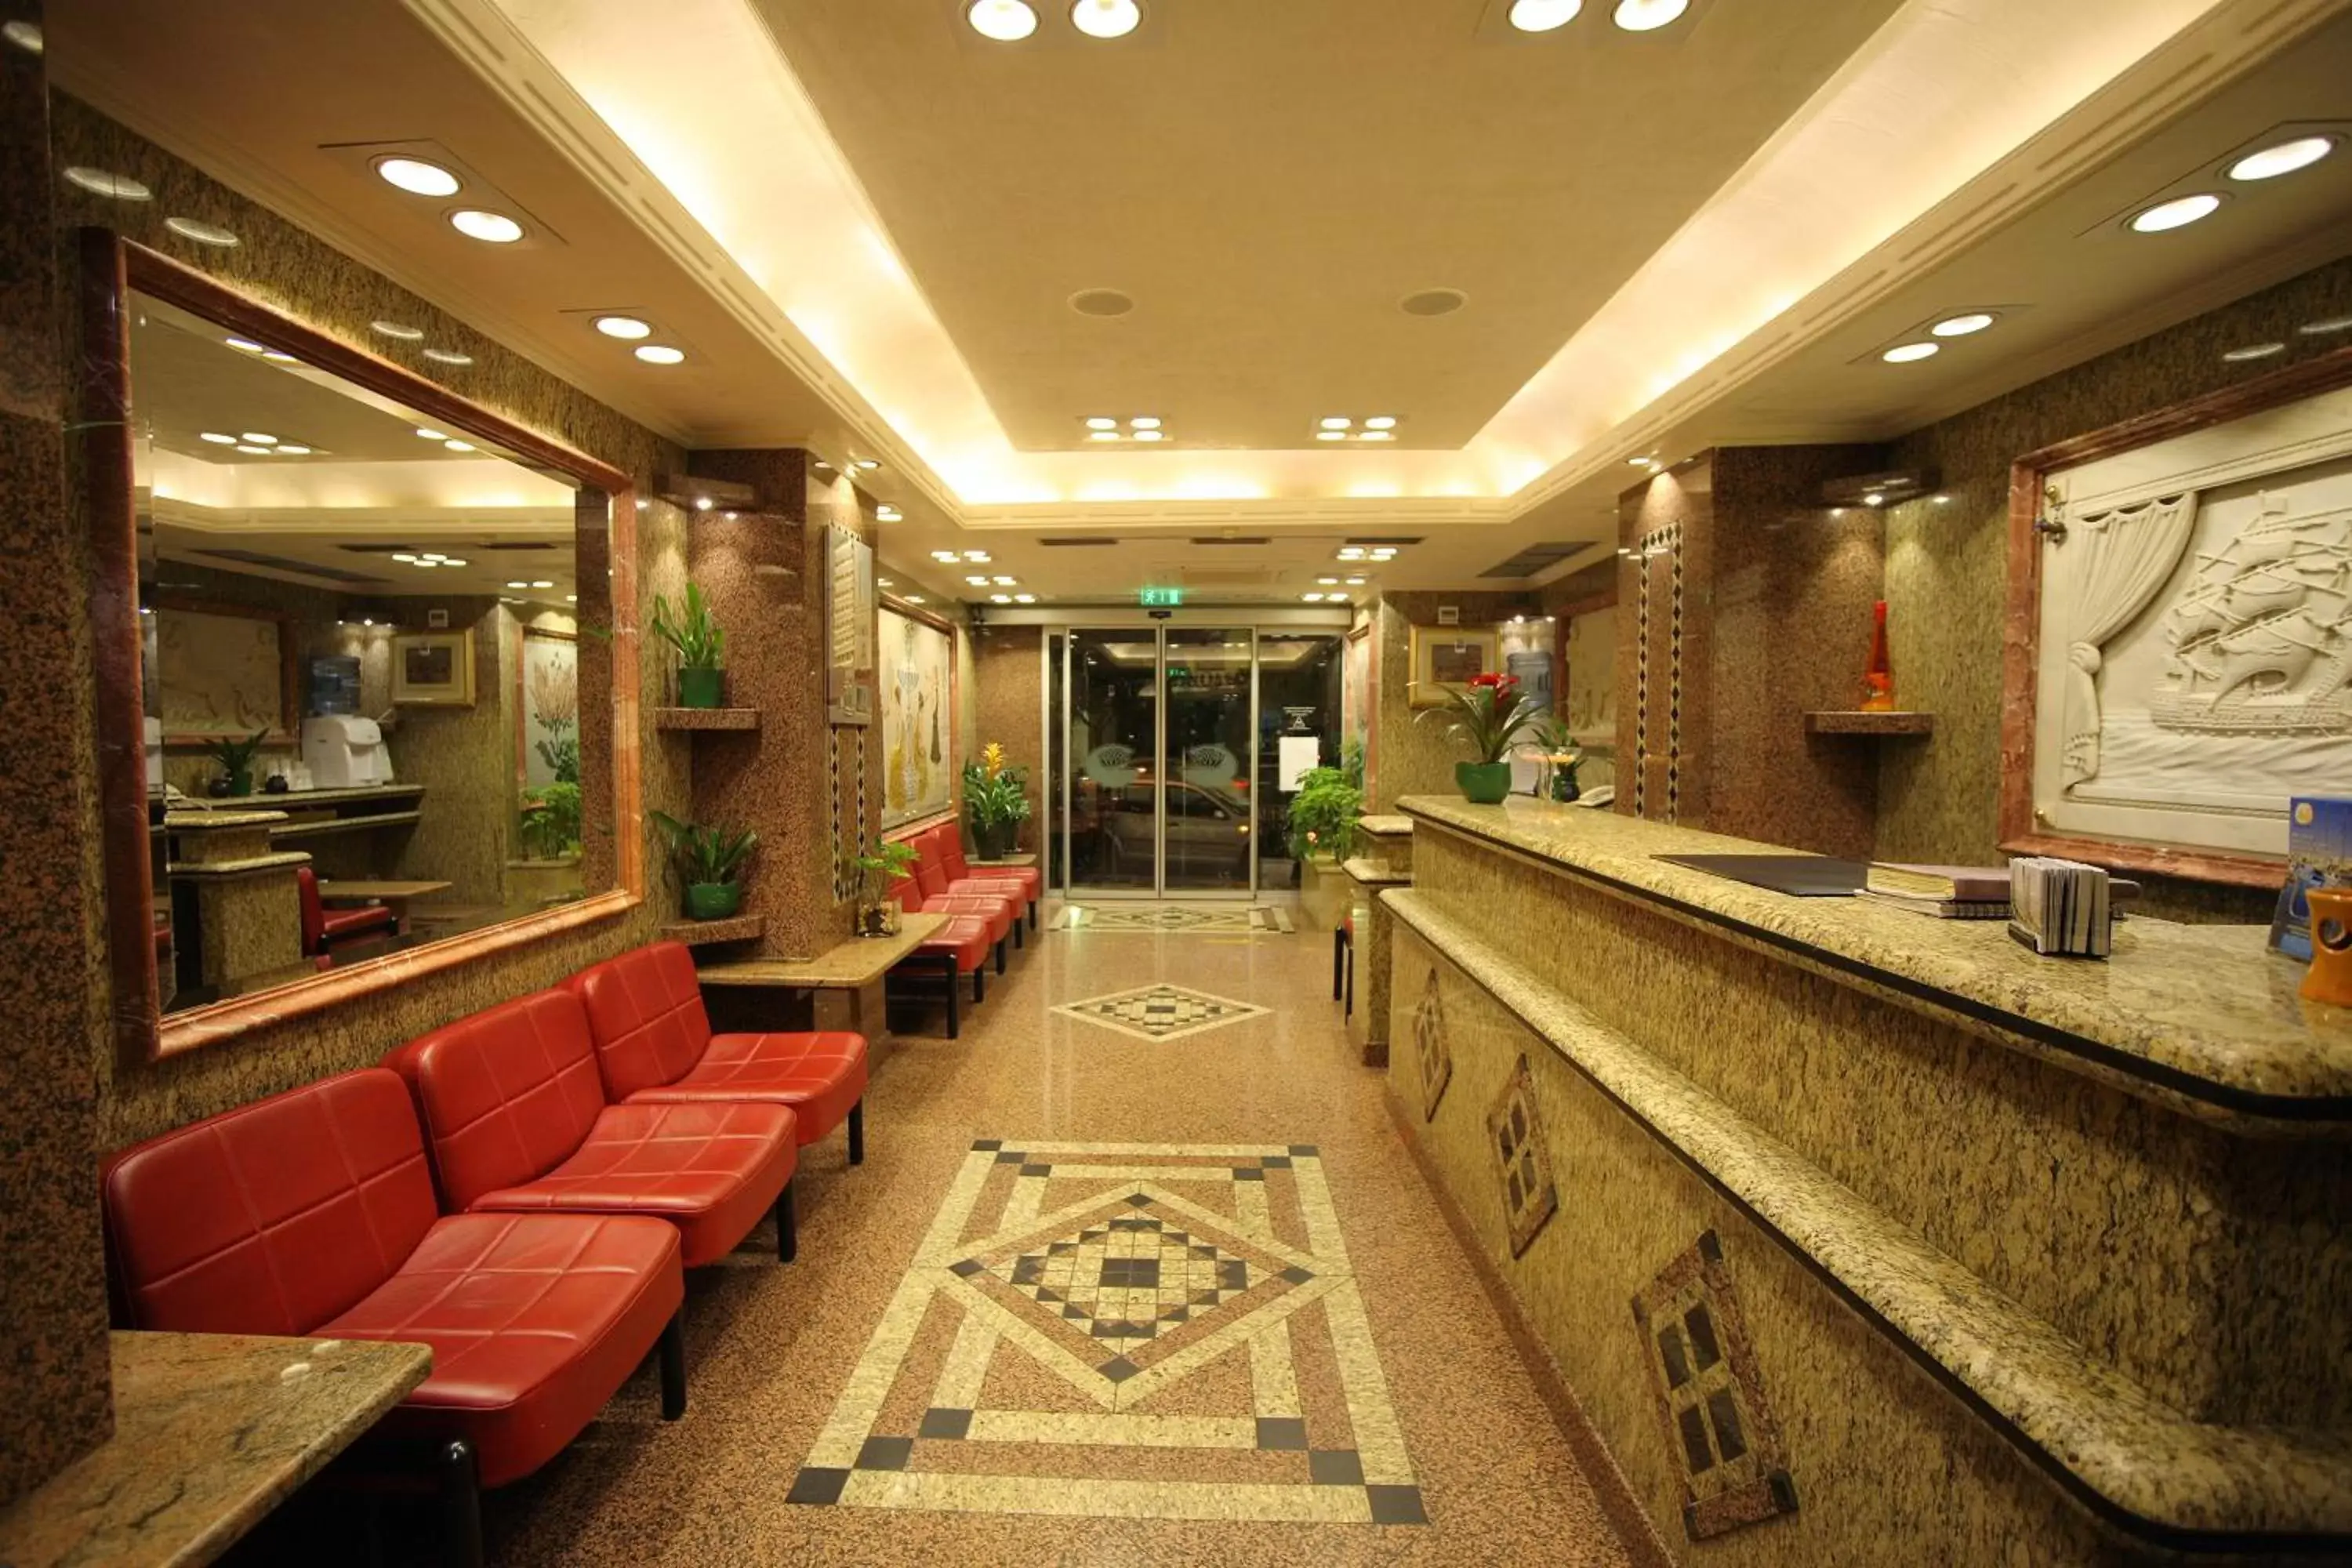 Lobby or reception, Lobby/Reception in Noufara